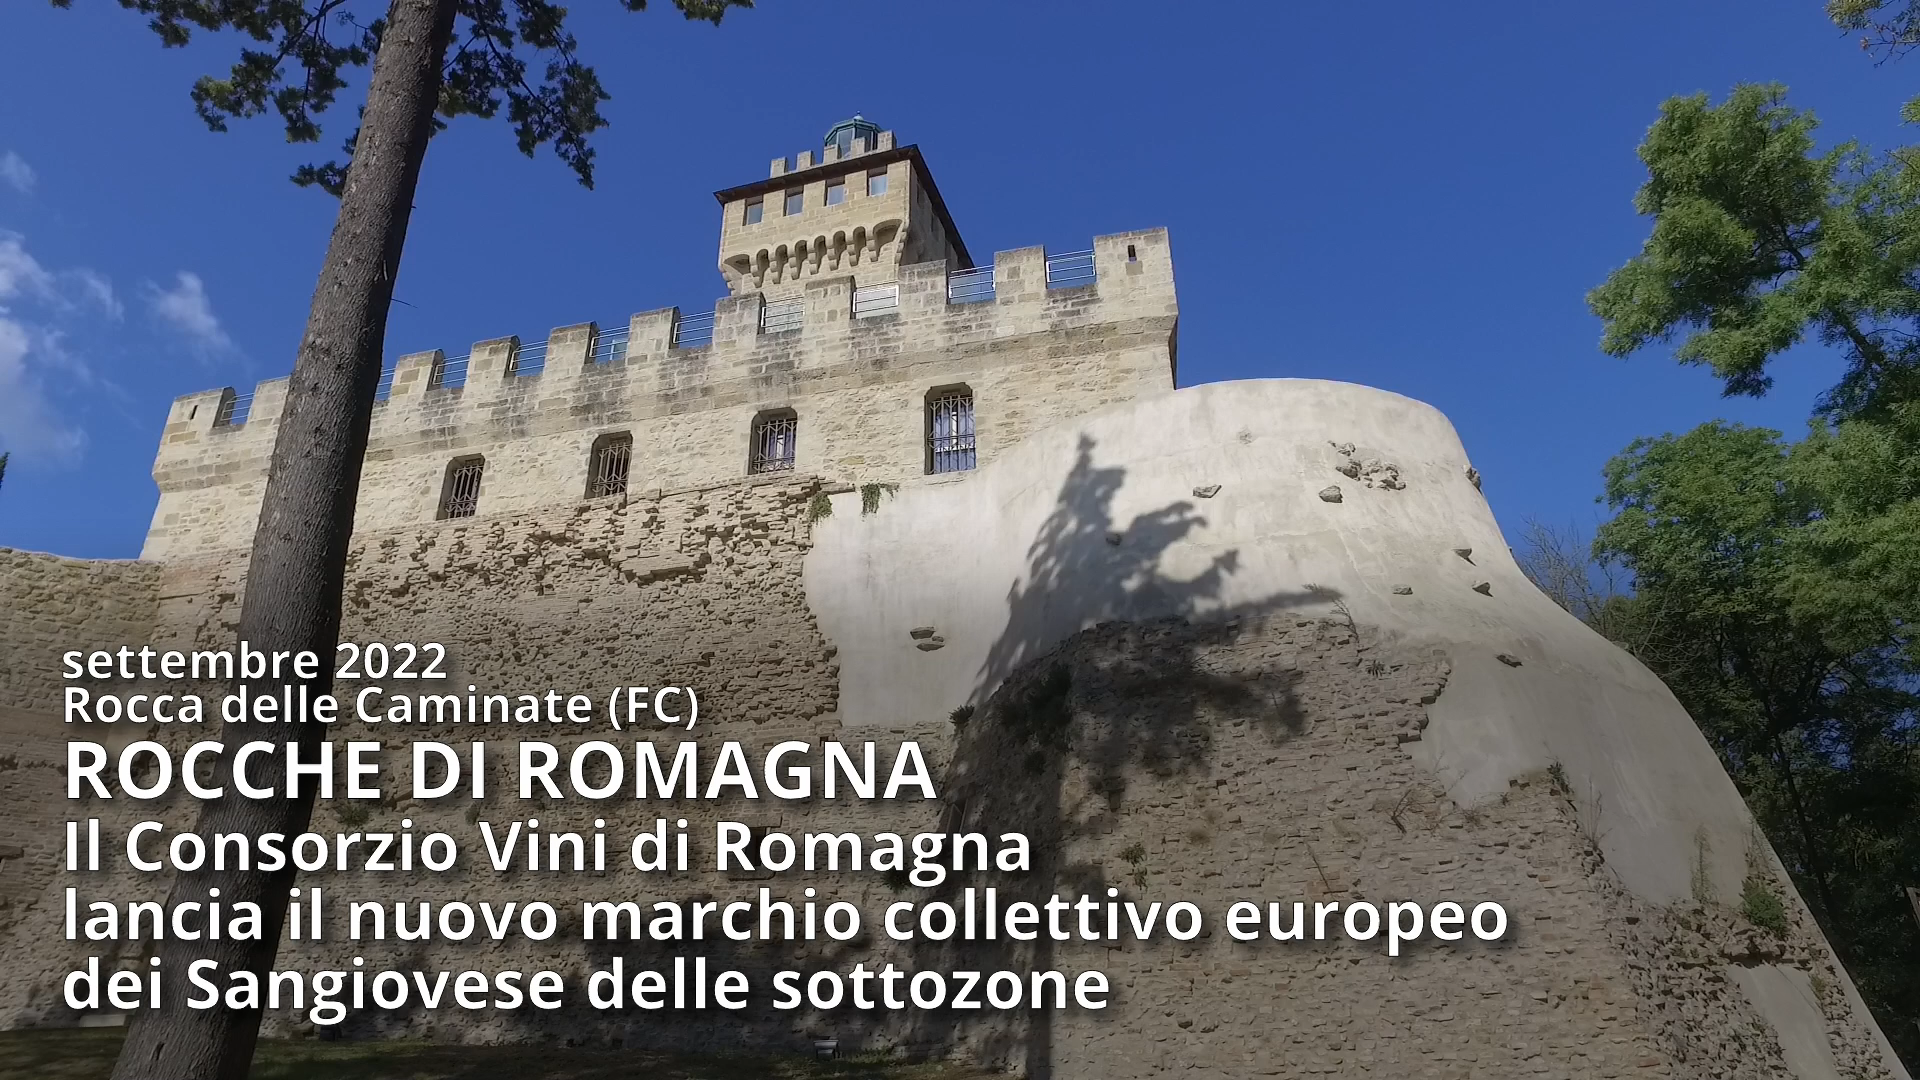 ROCCHE DI ROMAGNA: Il Consorzio Vini di Romagna lancia il nuovo marchio collettivo europeo dei Sangiovese delle sottozone – 5 min